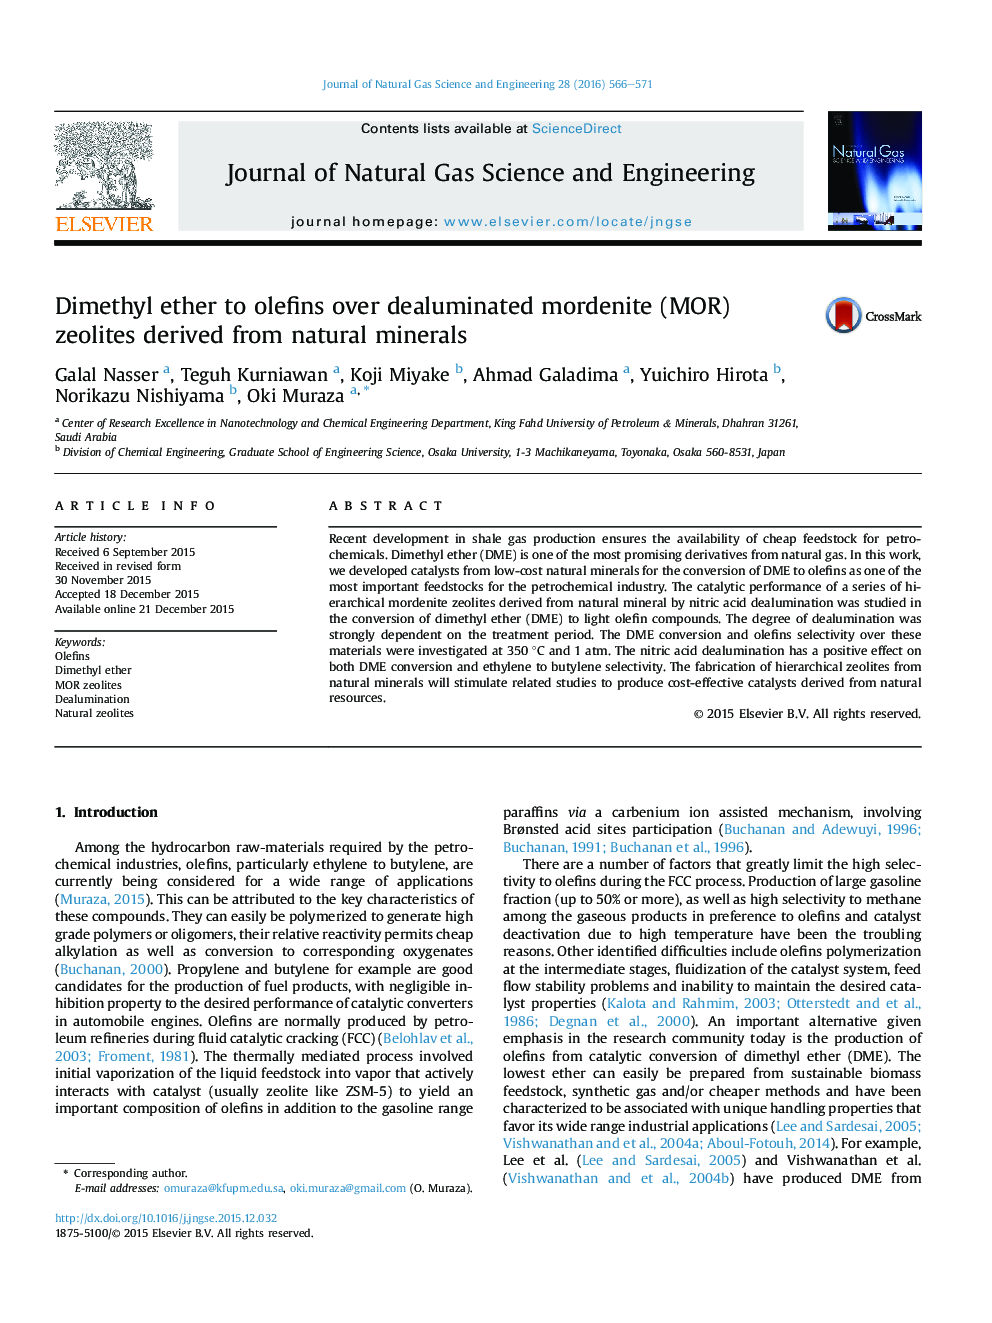 دی متیل اتر برای الفین ها بر روی زئولیت های موردنیت dealuminated (MOR) به دست آمده از مواد معدنی طبیعی